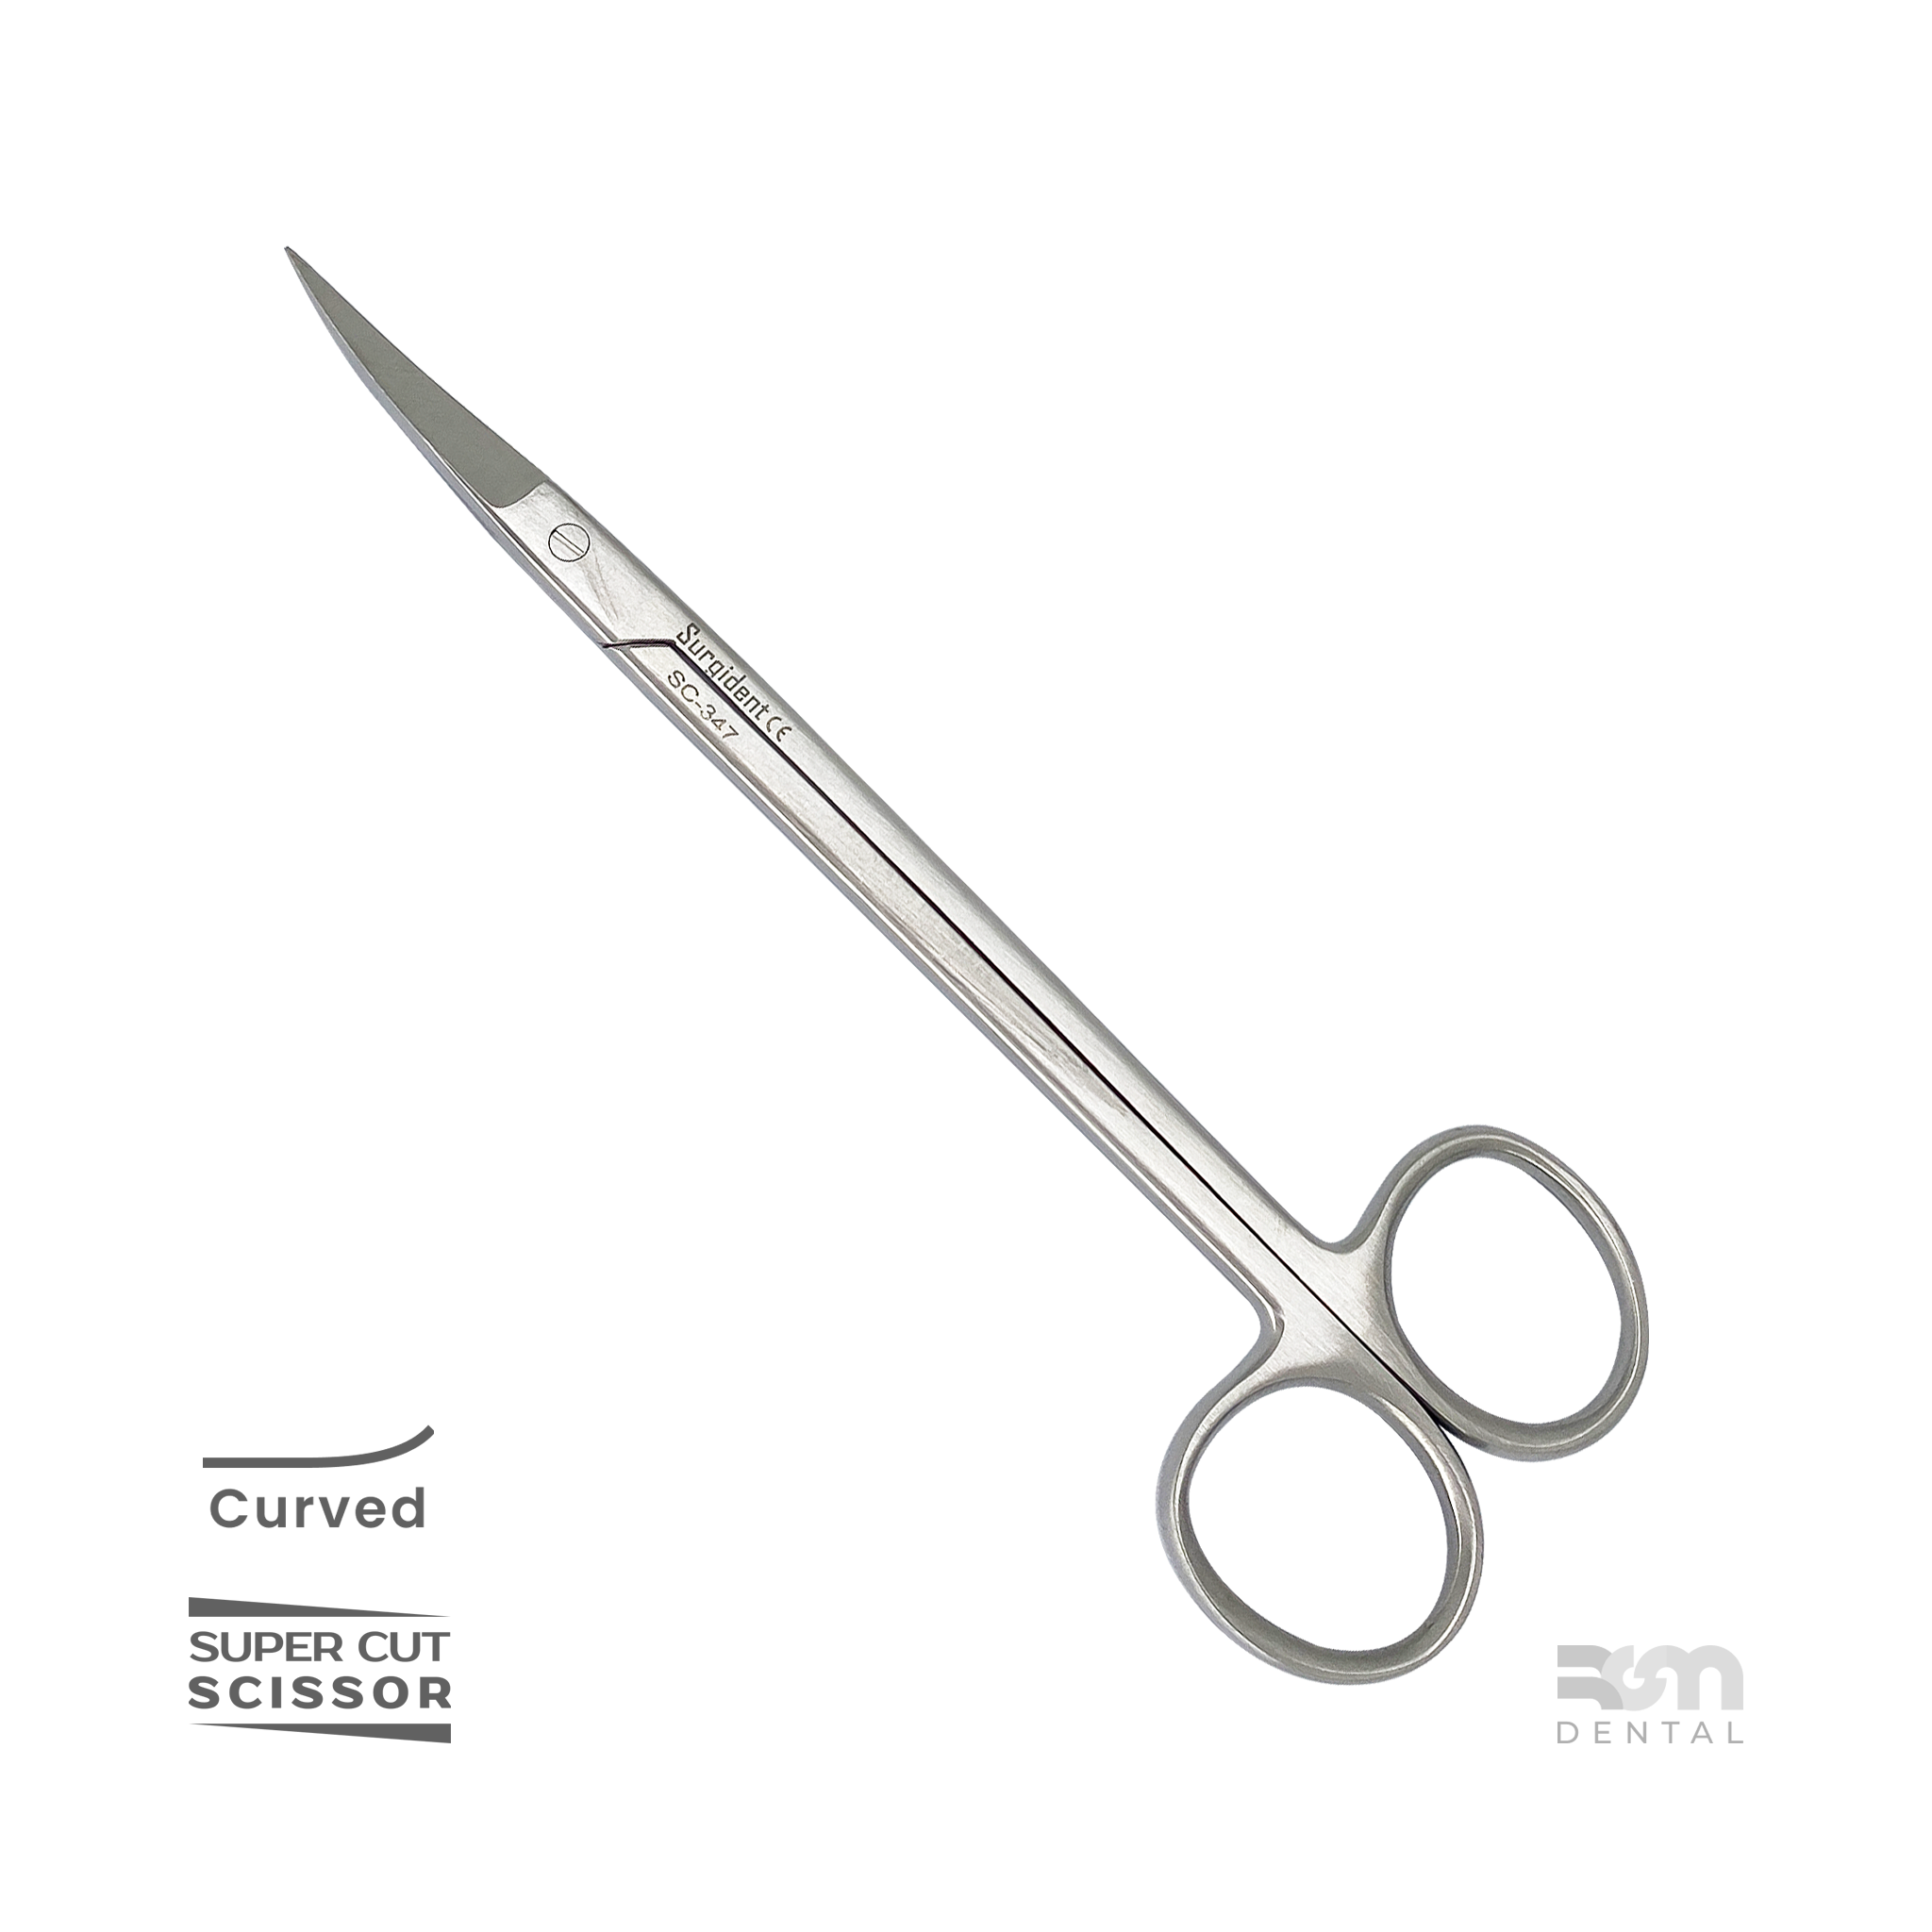 Kelly Scissors S1 : 16cm, Curved, Super Cut